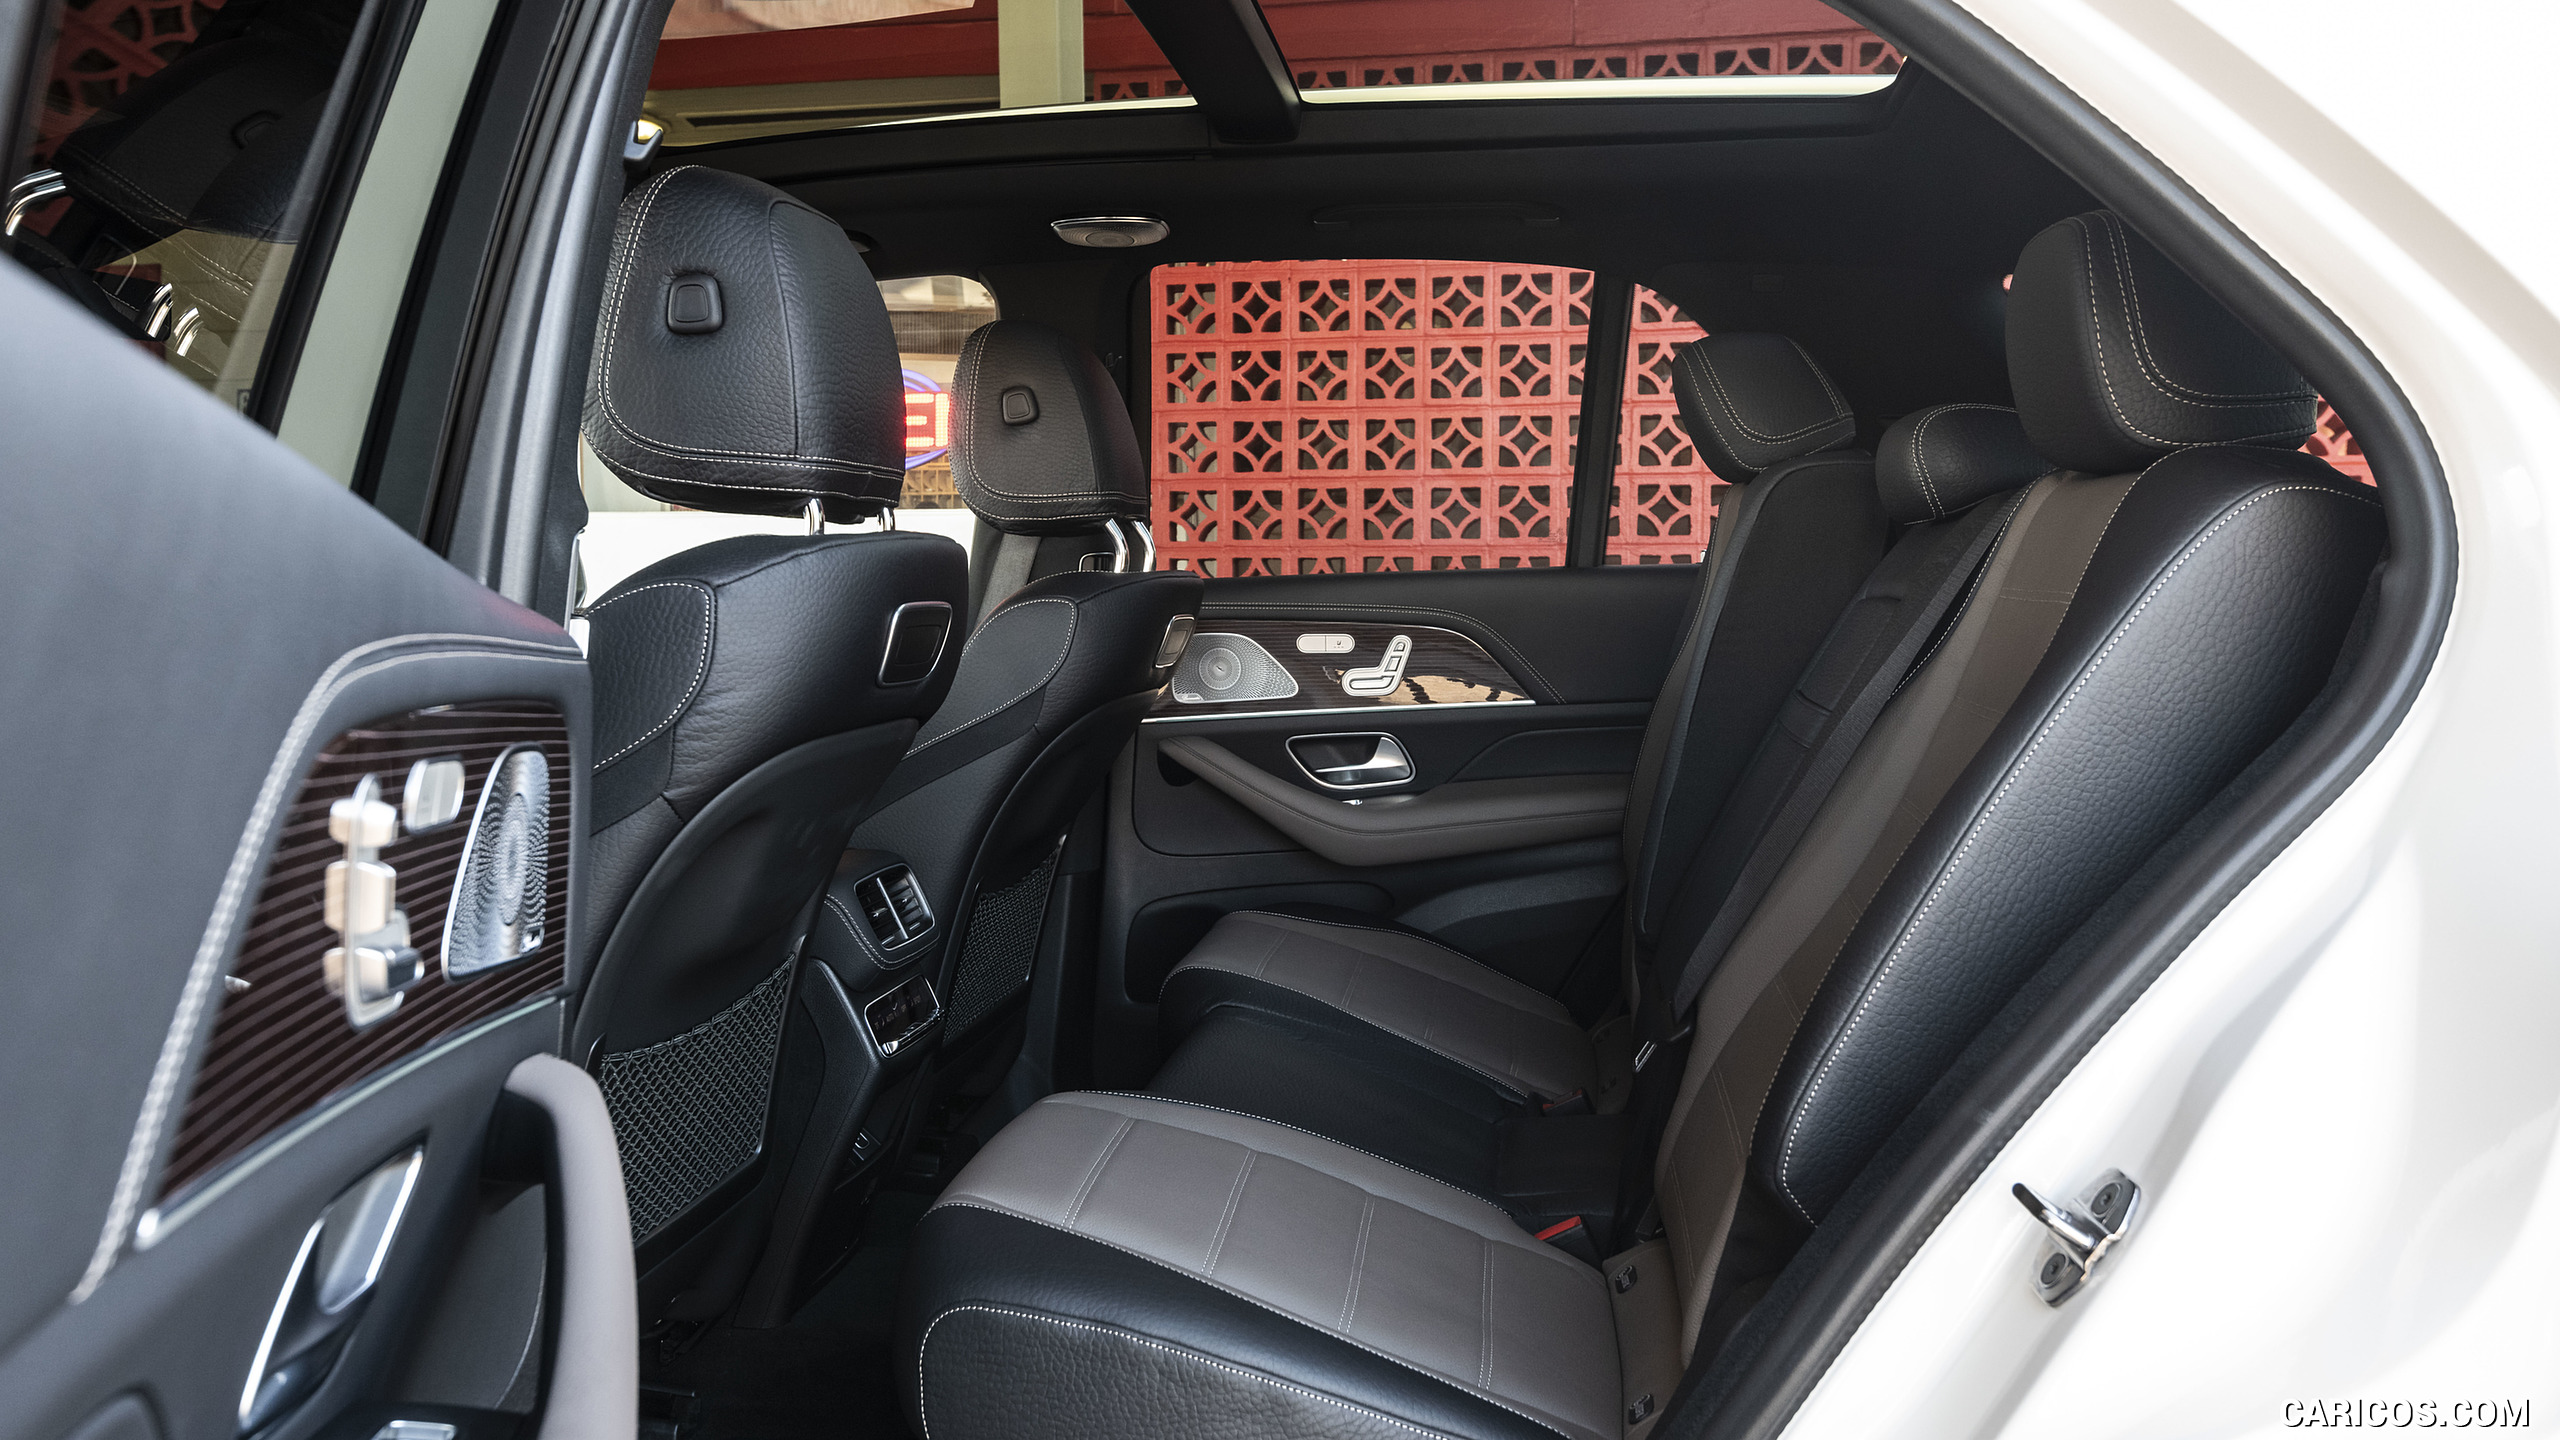 2020 Mercedes-Benz GLE 450 4MATIC (Color: Designo Diamond White Bright; US-Spec) - Interior, Rear Seats, #160 of 358